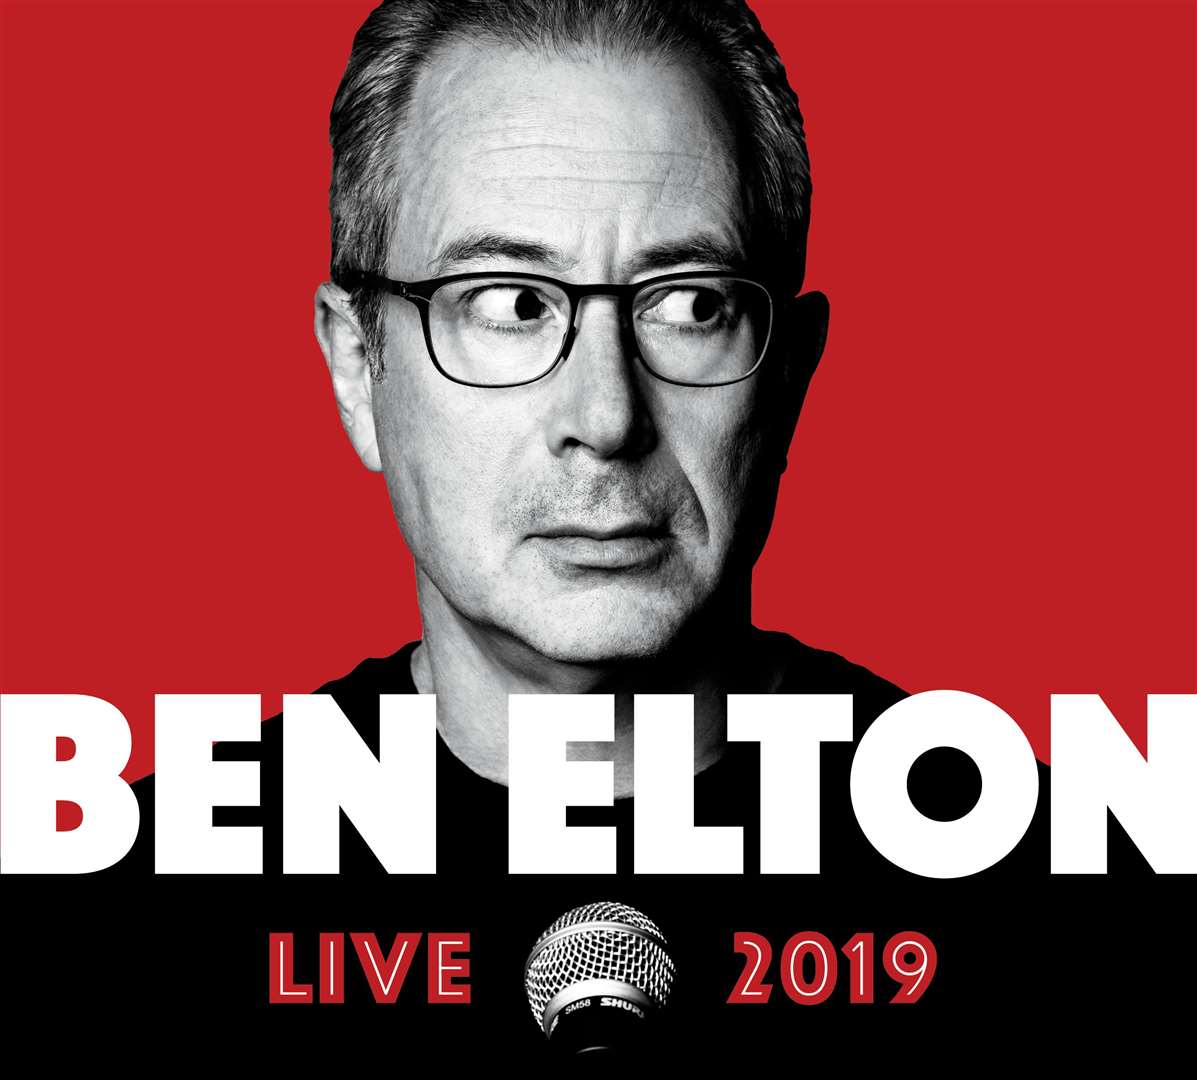 Ben Elton will be touring in 2019